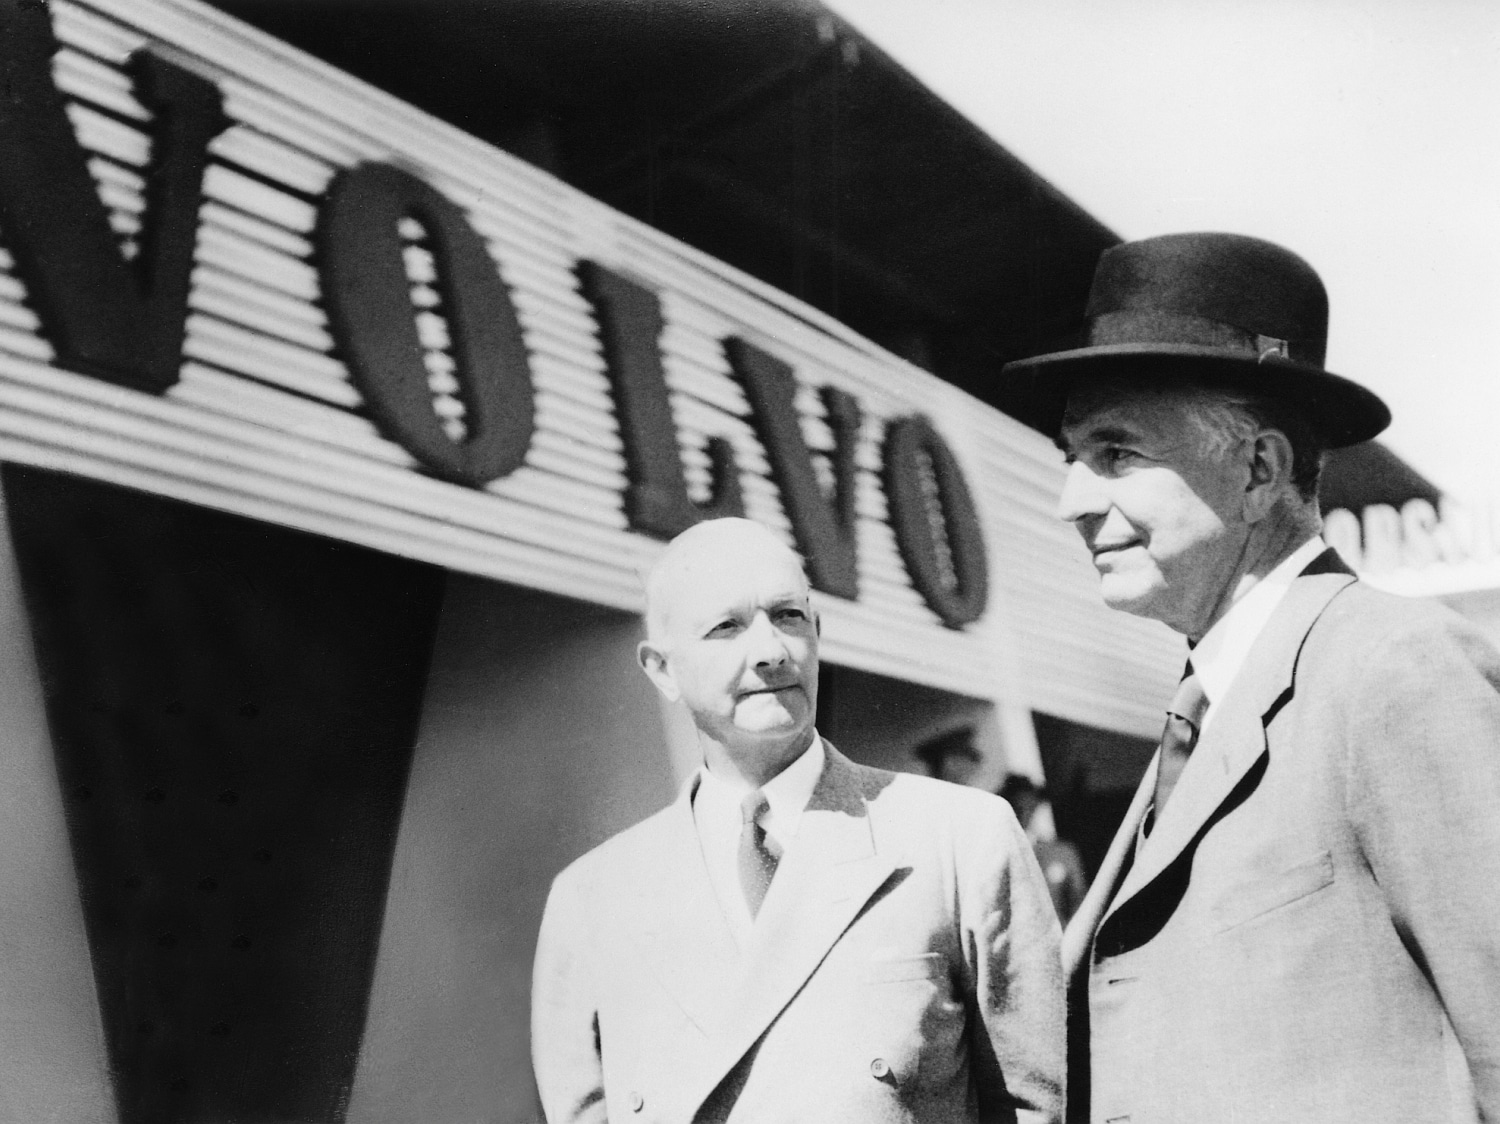 Винтажный снимок двух джентльменов, стоящих рядом с вывеской VOLVO.